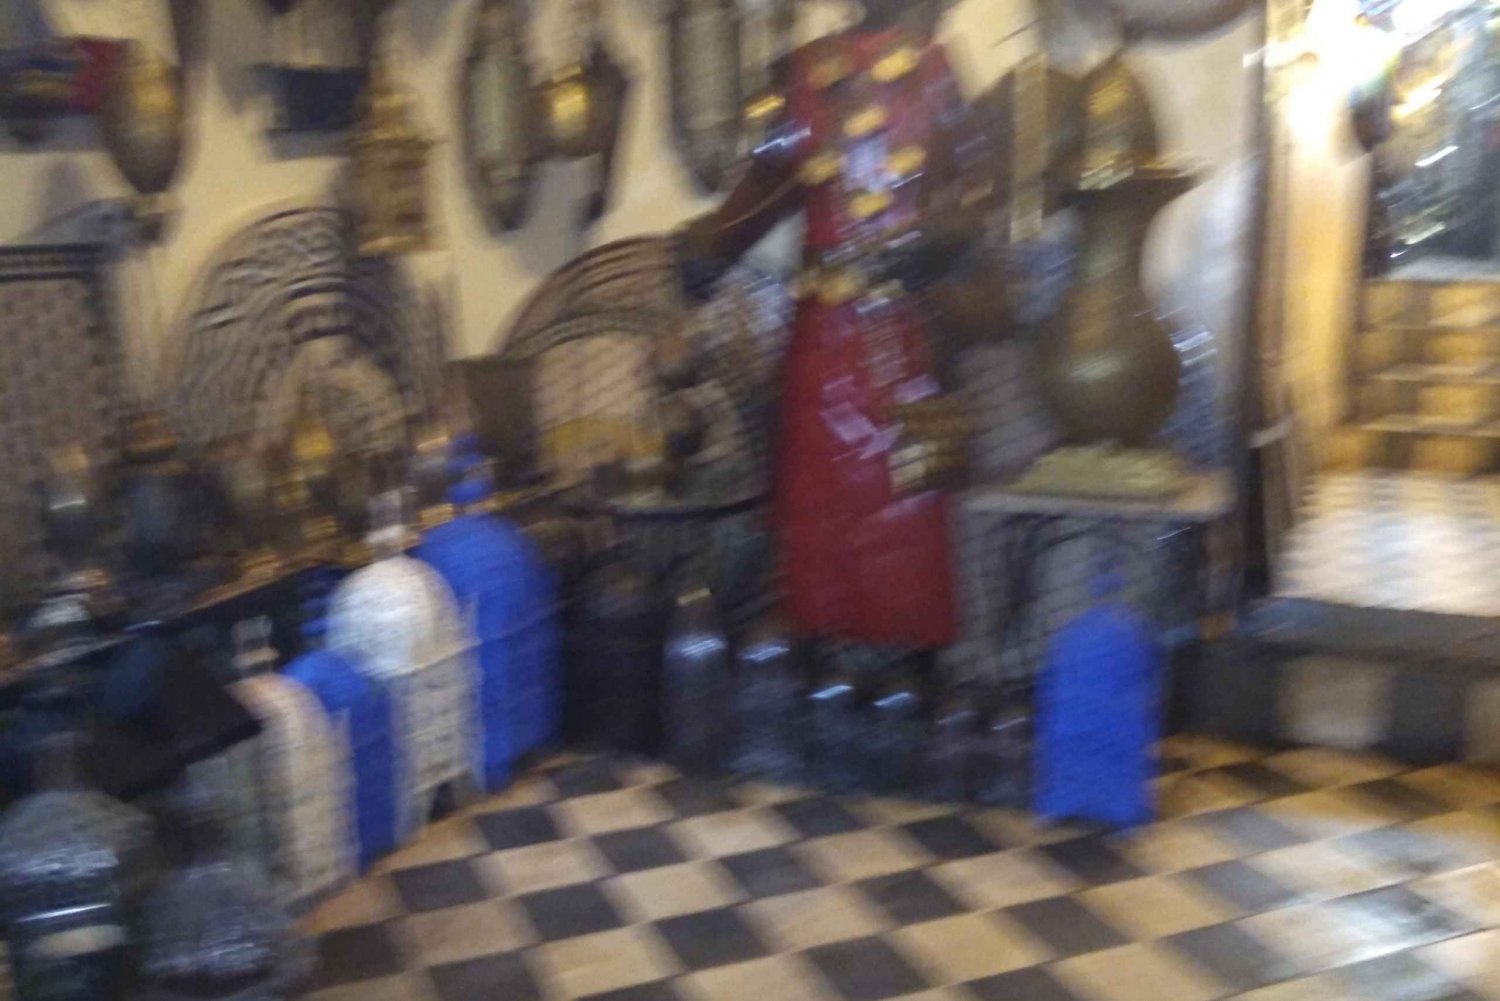 Les souks sont des marchés animés où l'on trouve des artisans locaux.